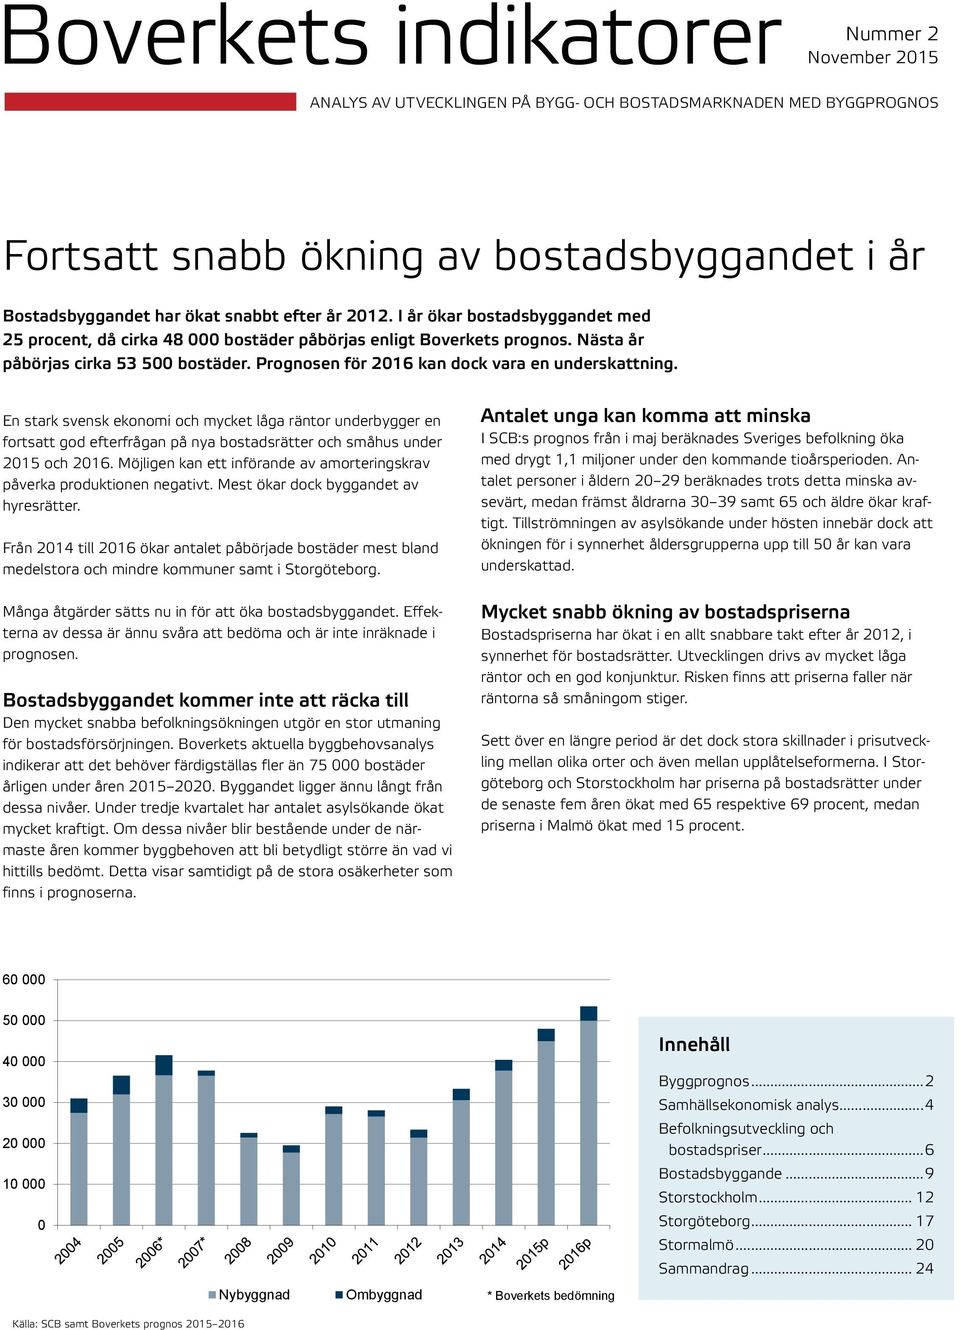 En stark svensk ekonomi och mycket låga räntor underbygger en fortsatt god efterfrågan på nya bostadsrätter och småhus under 215 och 216.